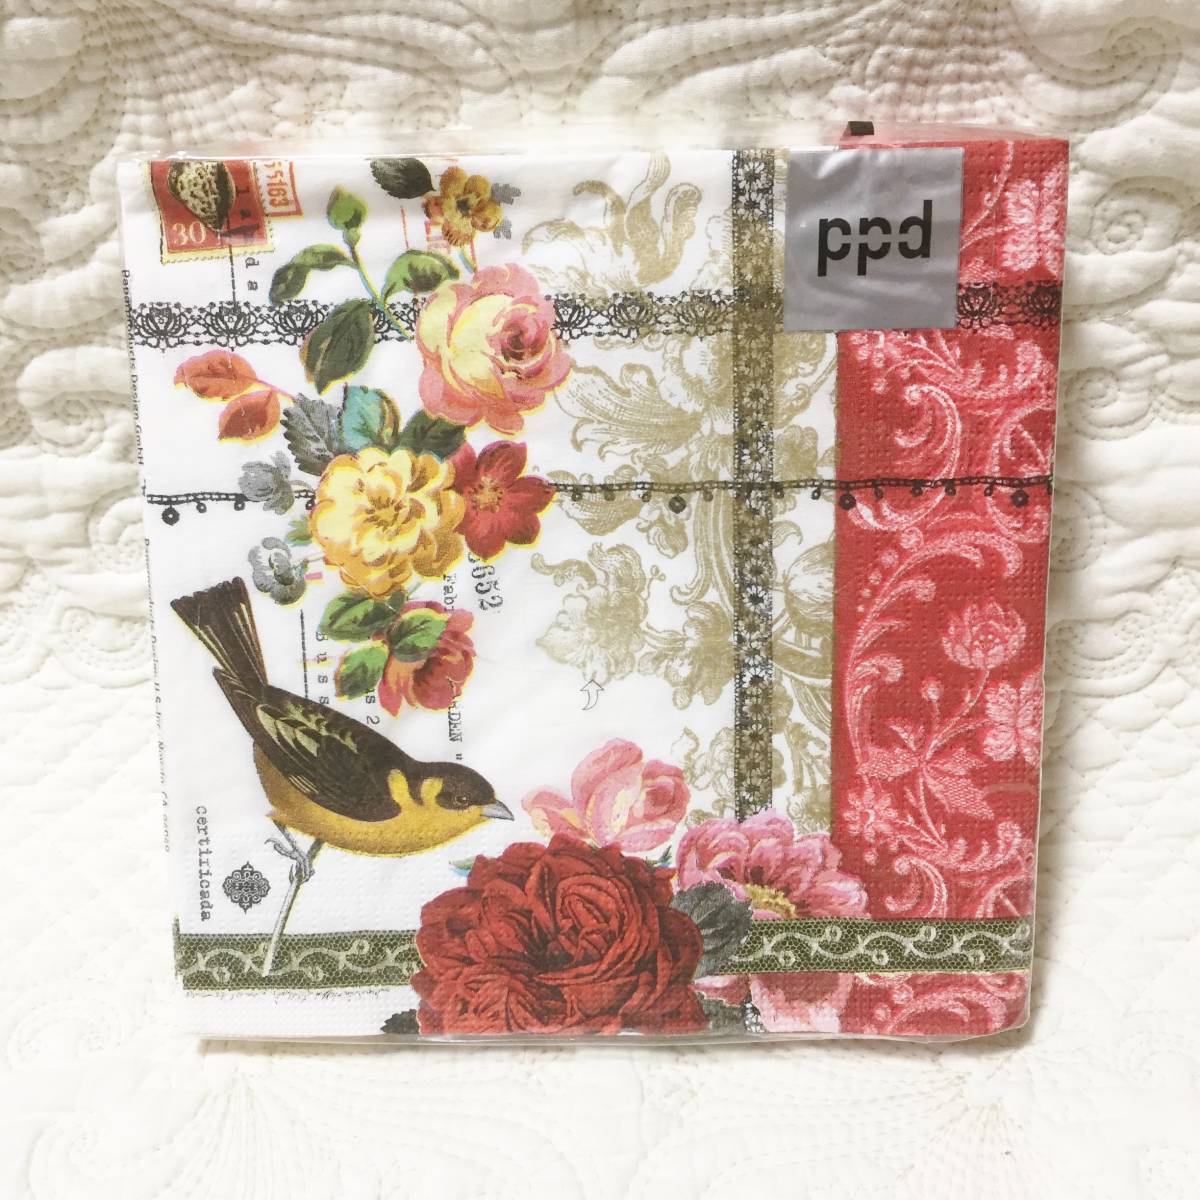  новый товар ppd бумага салфетка птица × цветочный принт 